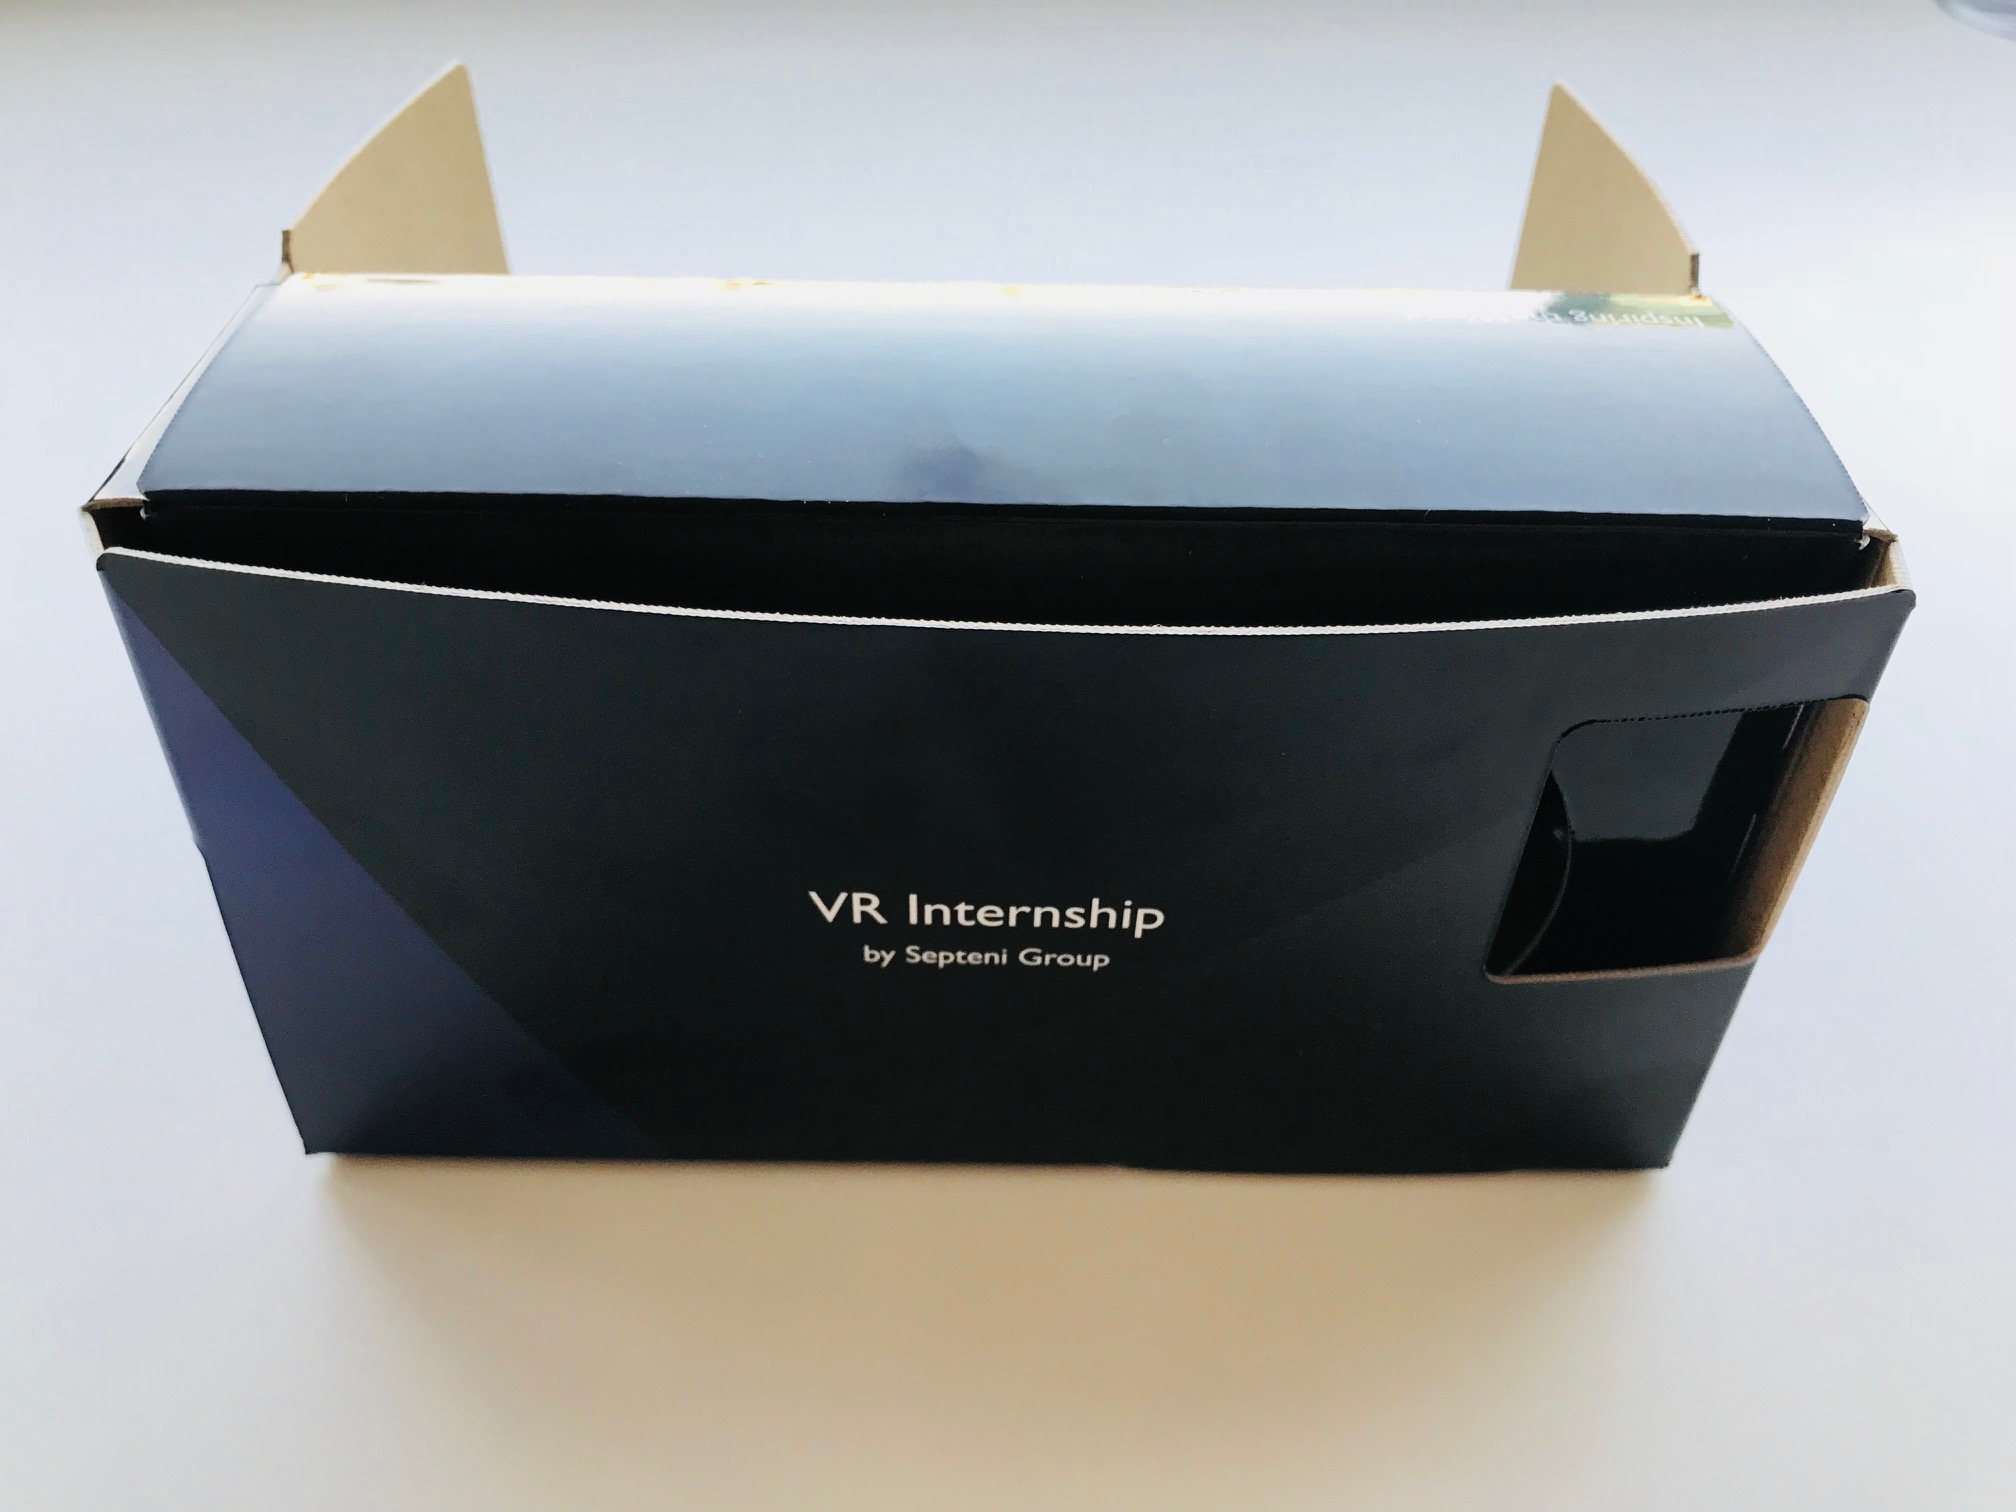 セプテーニ・ホールディングス社のVR Internshipに、 ハコスコゴーグルが採用